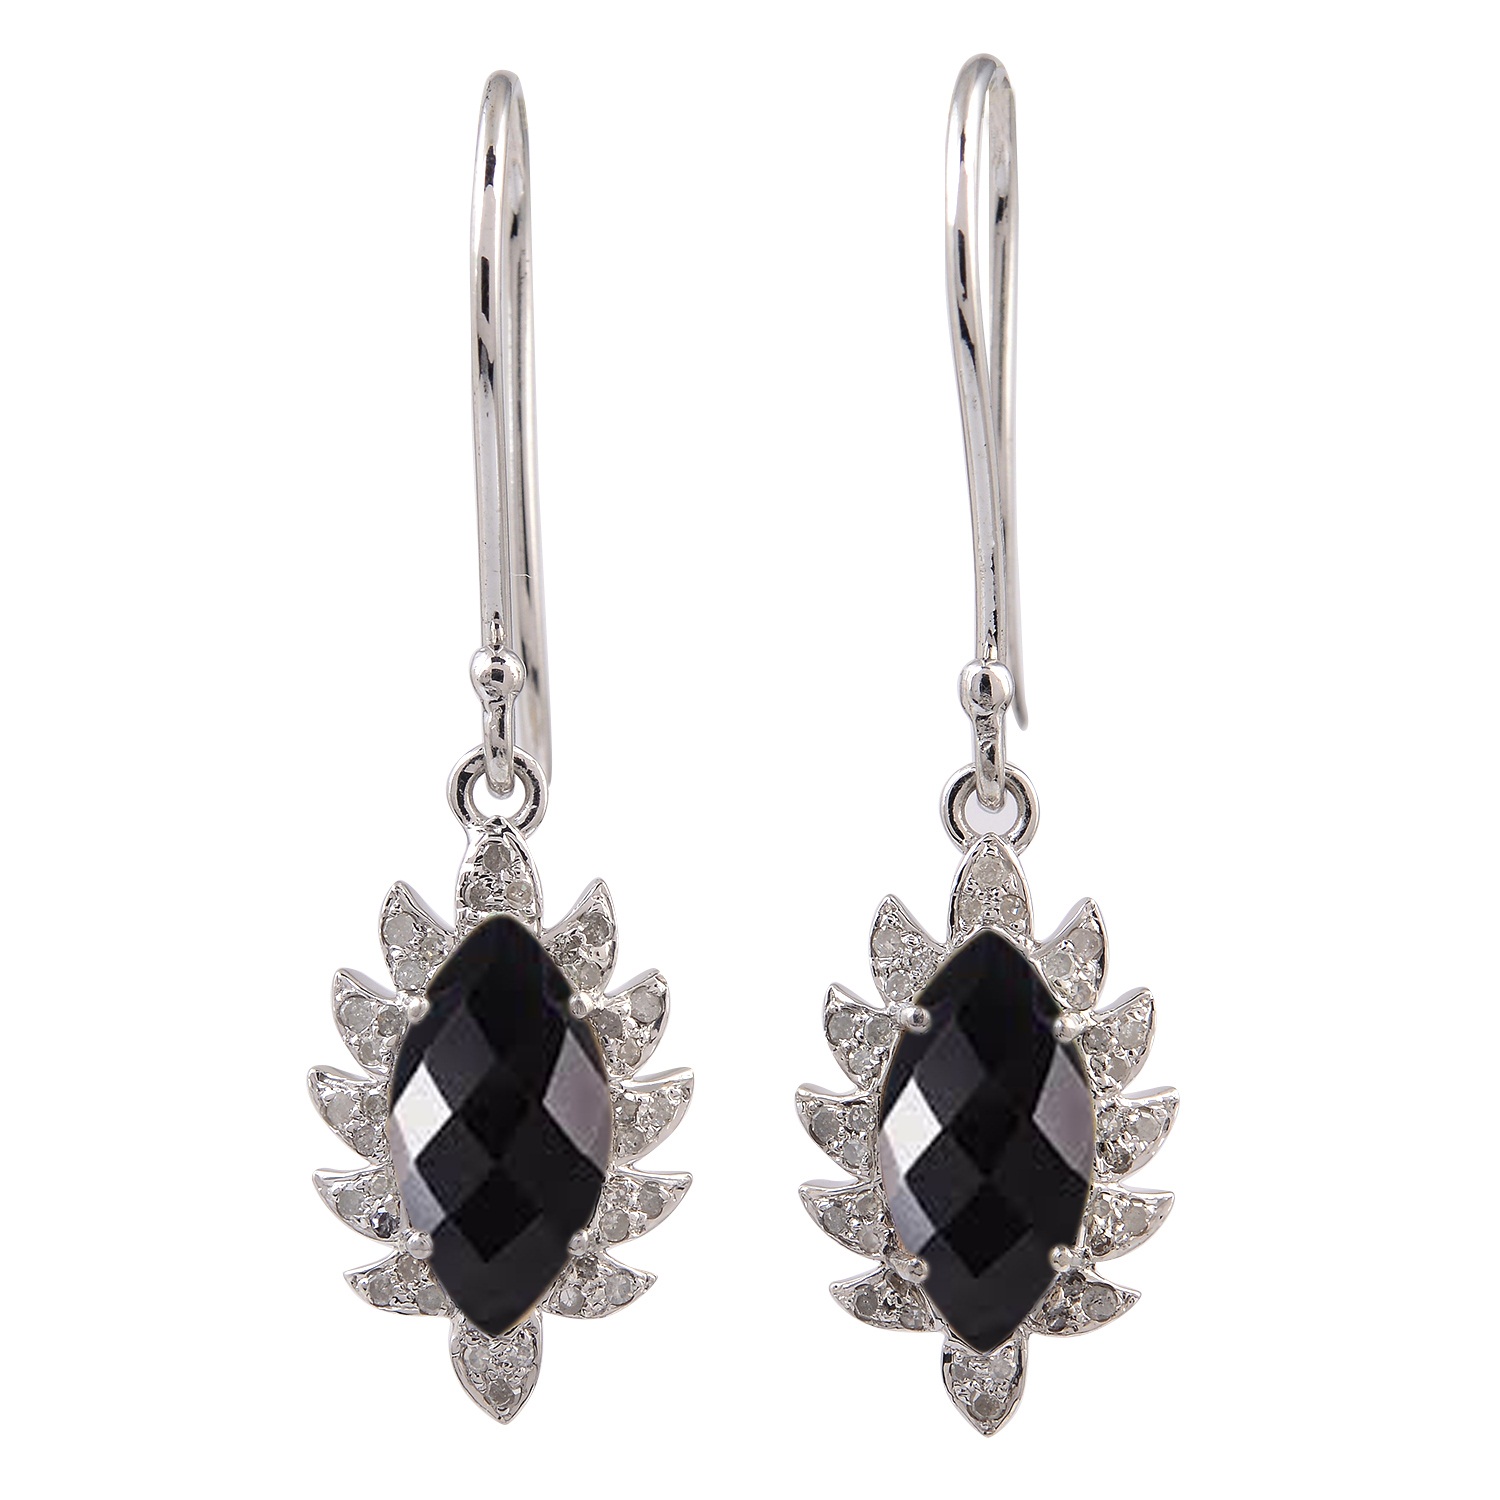 Meditation Earrings Semi Precious Gemstone Earrings Birthstone Earrings Beautiful Black Onyx Sterling Silver Dangle Earrings